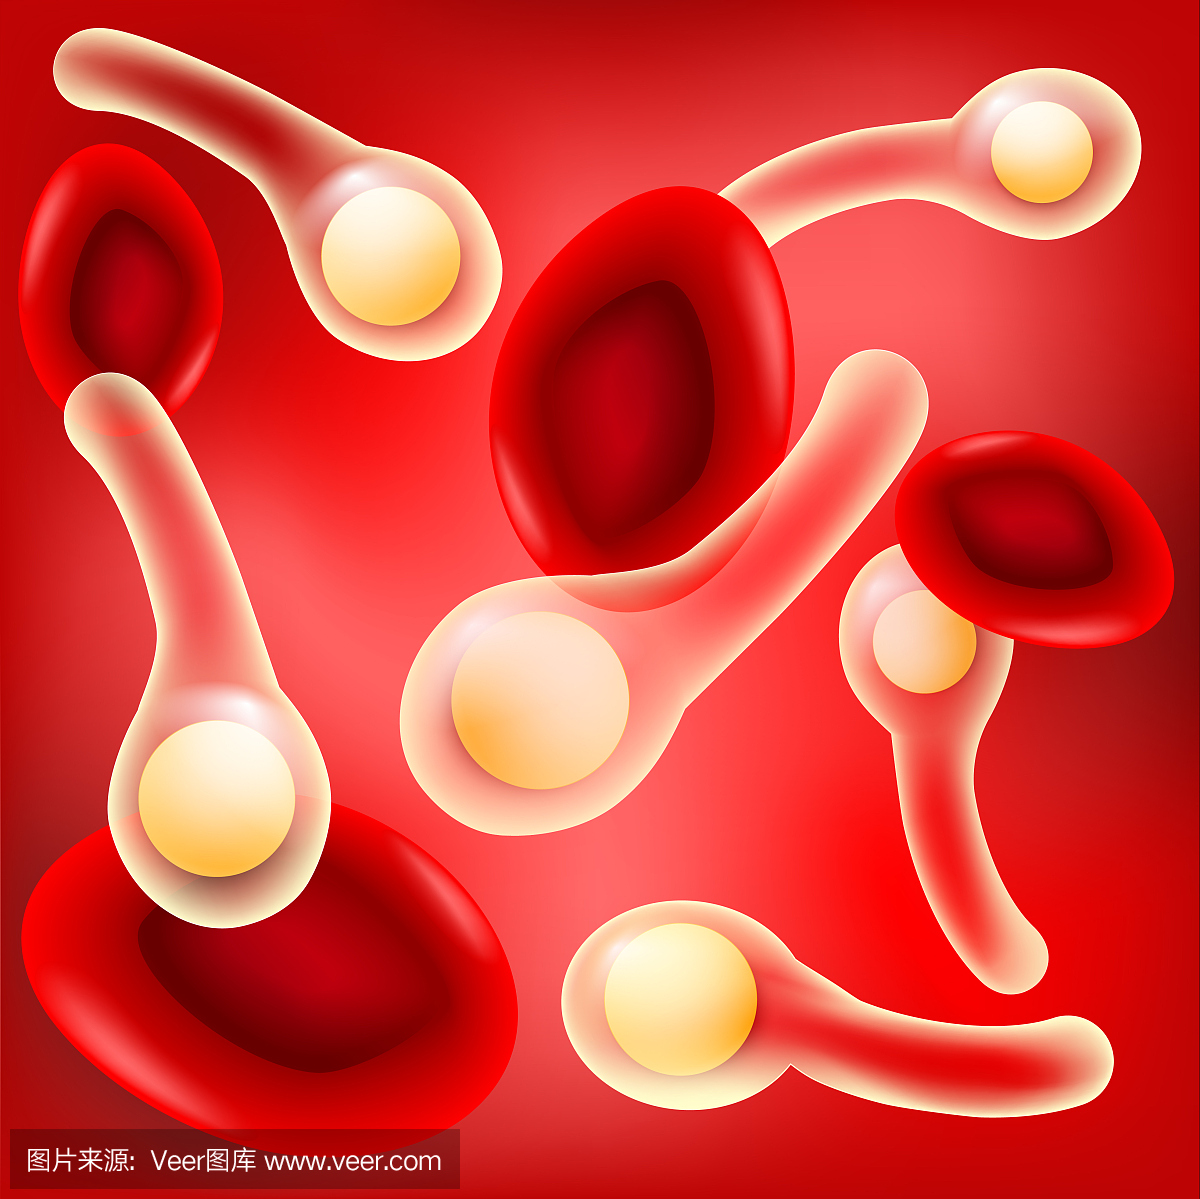 红血细胞和与孢子的破伤风梭菌在红色背景。